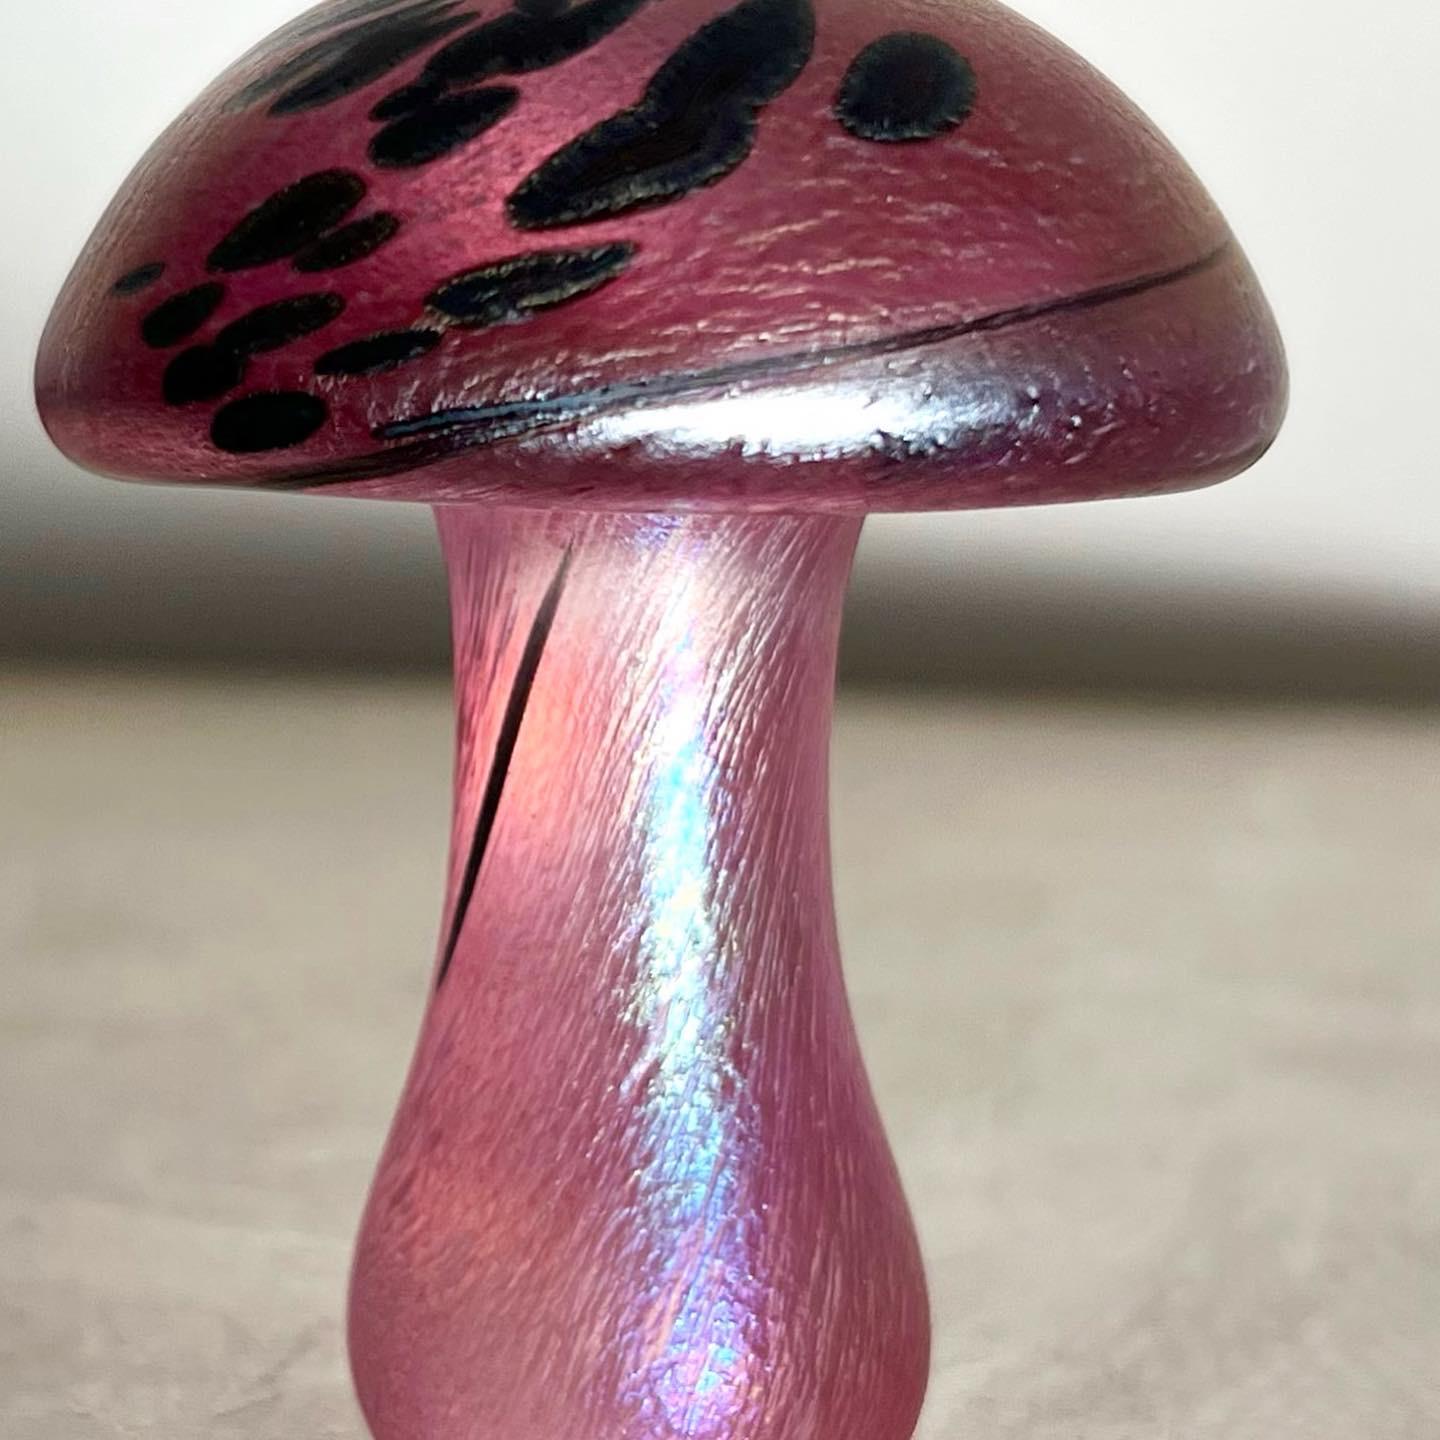 Iridescent Pink Art Glass Mushroom Objet d’art, Early Aughts 2